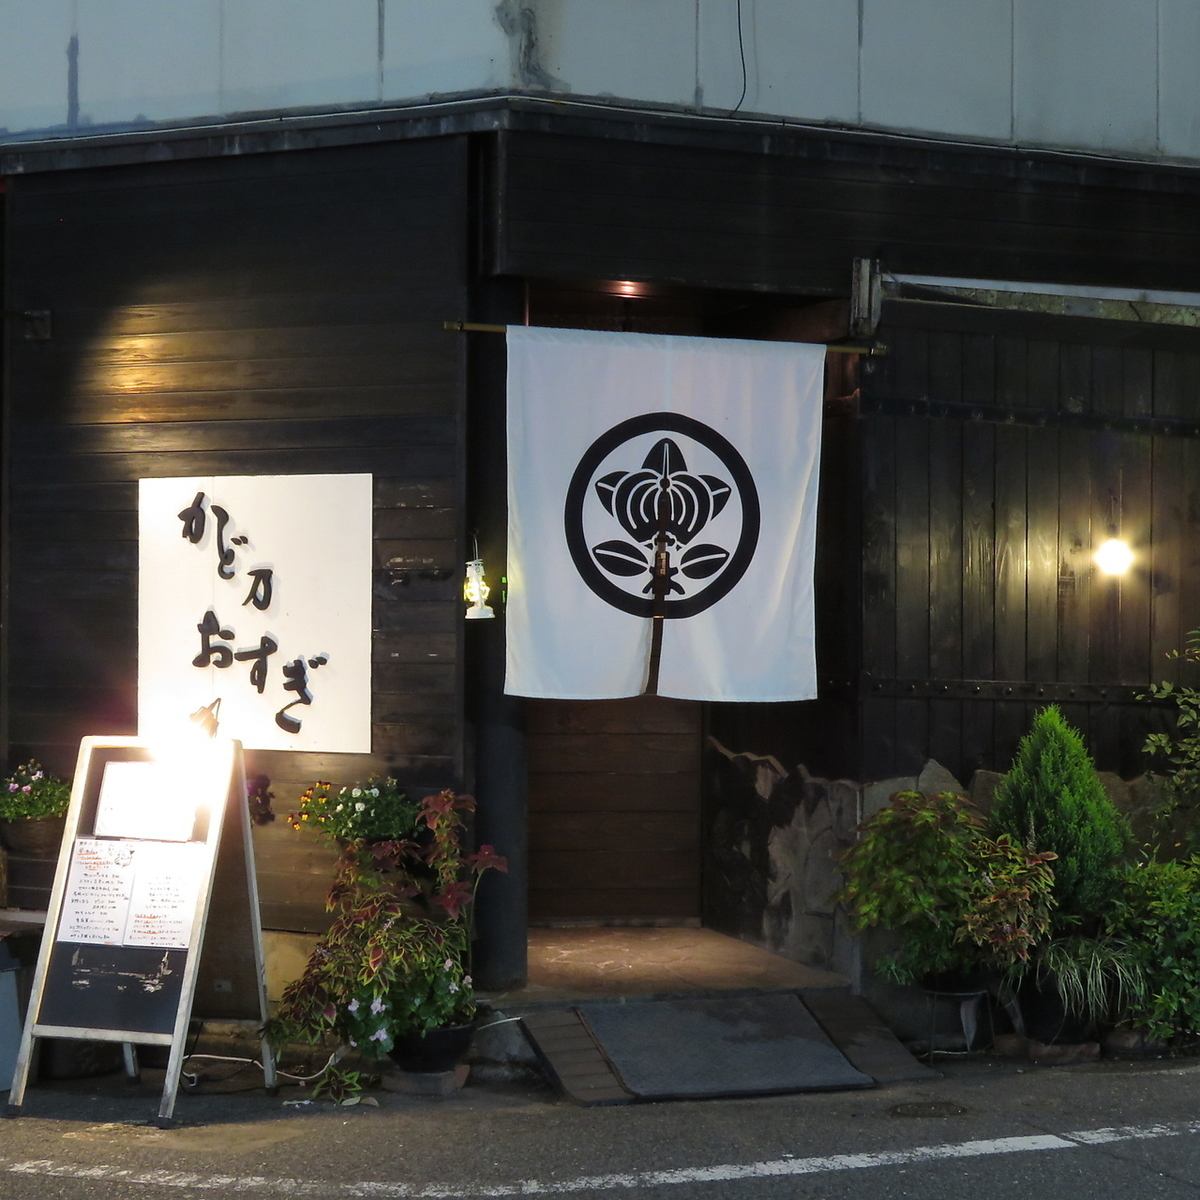 我们还提供最受欢迎的 6,500 日元套餐，推荐用于招待客人！